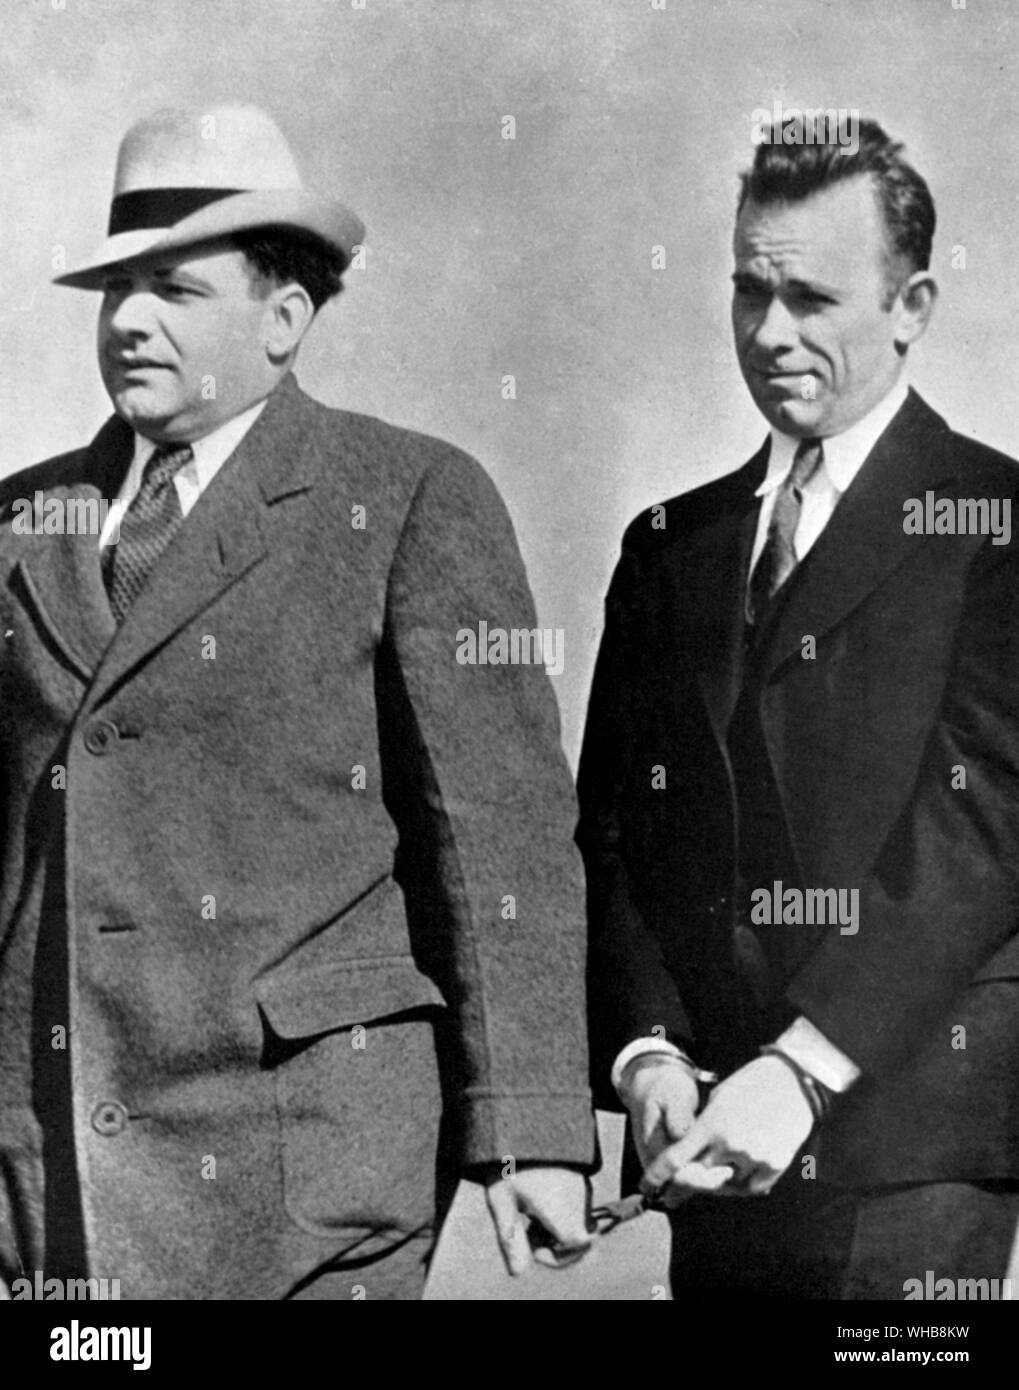 John Herbert Dillinger (right) American gangster arrested on 30 January 1934 Stock Photo